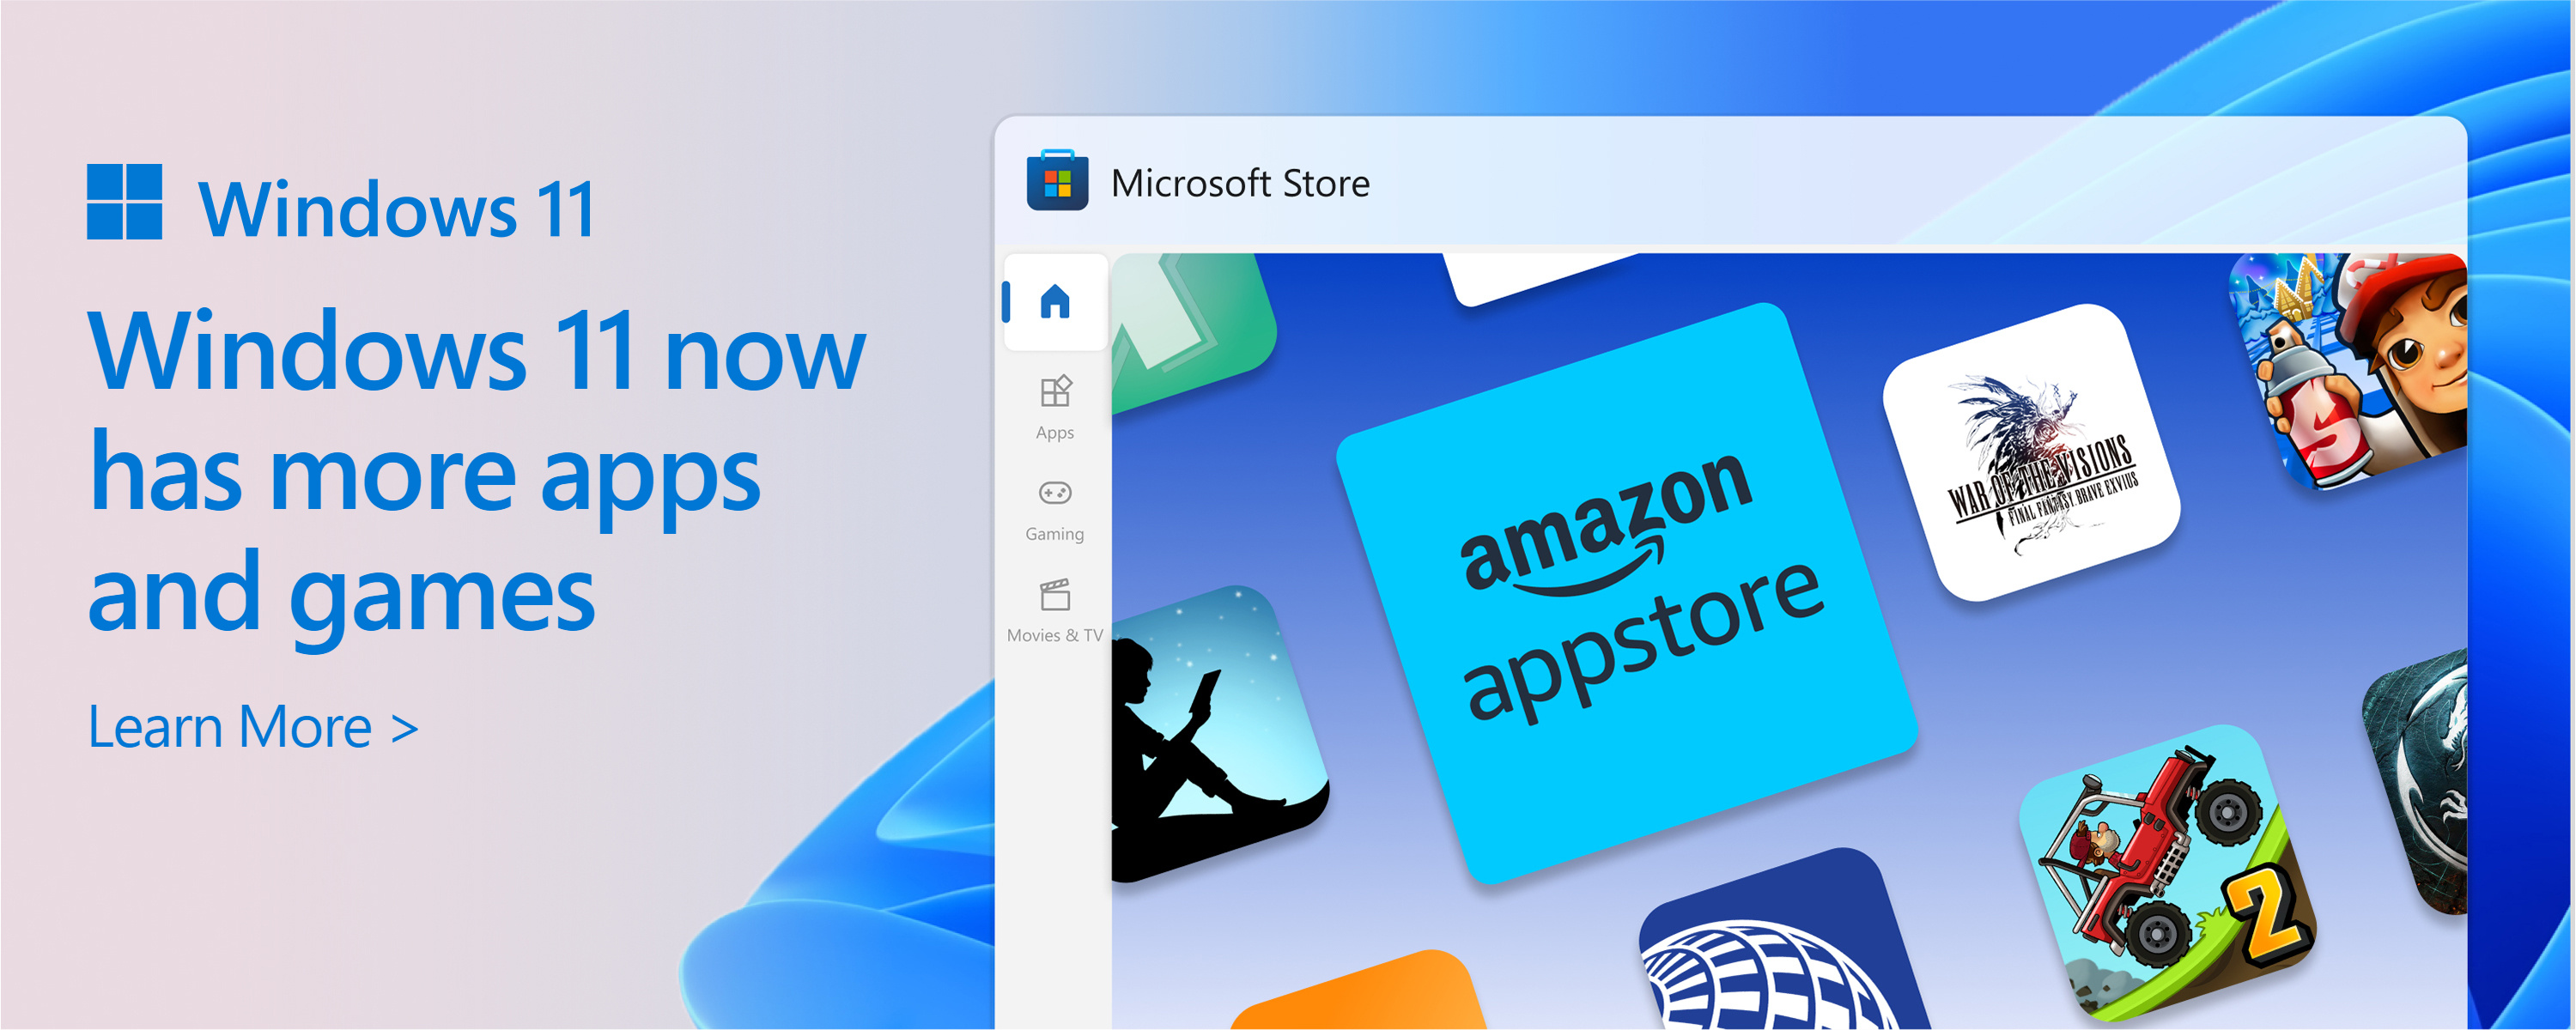 Et skjermbilde av Microsoft Store med teksten: Microsoft Stores katalog vokser. Windows 11 gir deg mer av appene og spillene du ønsker og trenger.